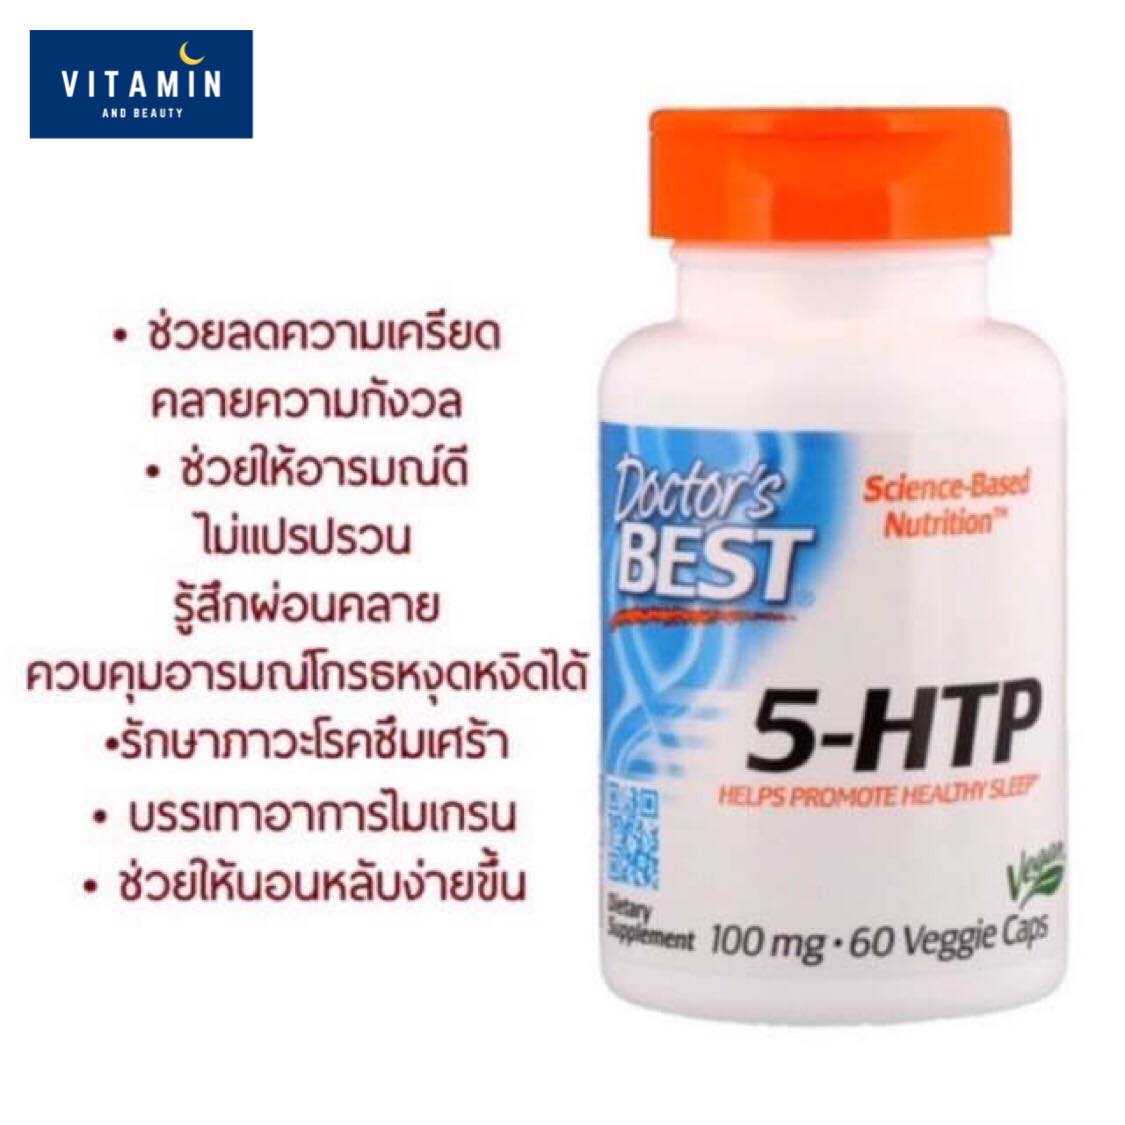 ตัวช่วยลดความเครียด 5-HTP, Doctor's Best, 100 mg, 60 Veggie Caps, 5HTP